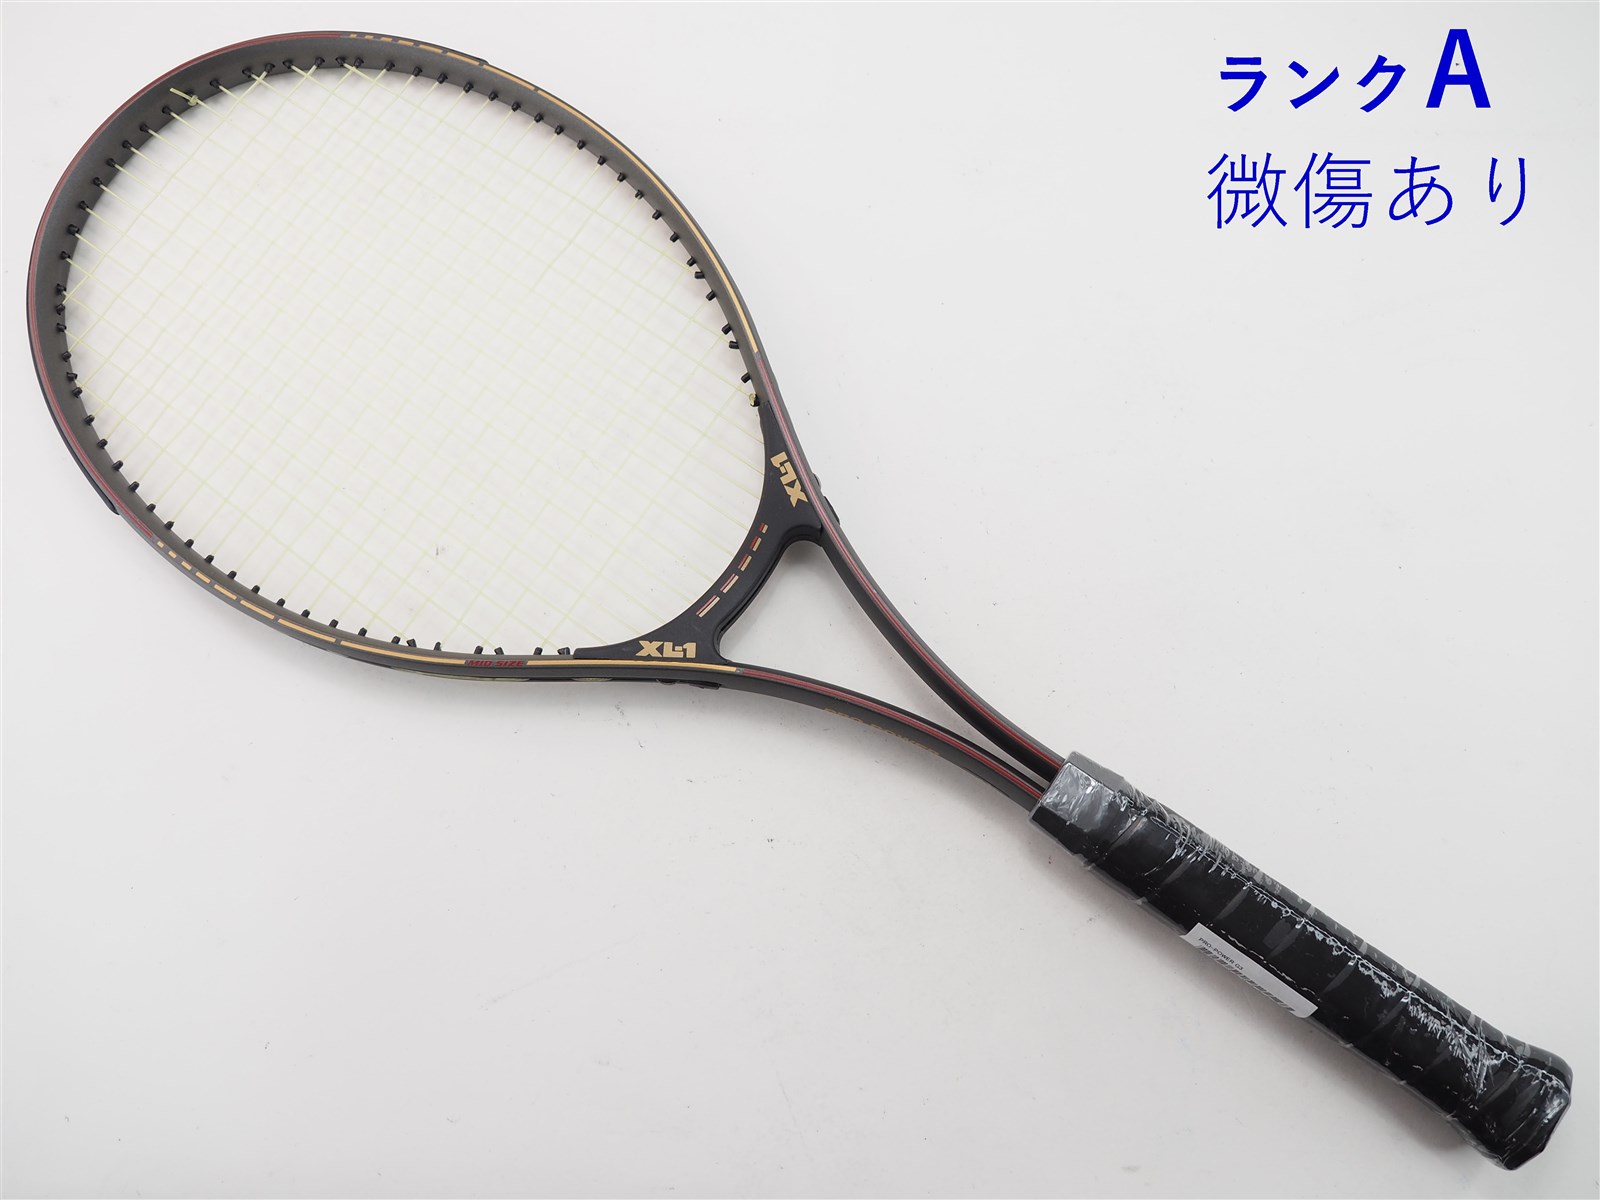 中古】エックスエルワン プロパワーXL-1 PRO-POWER(G3)【中古 テニス